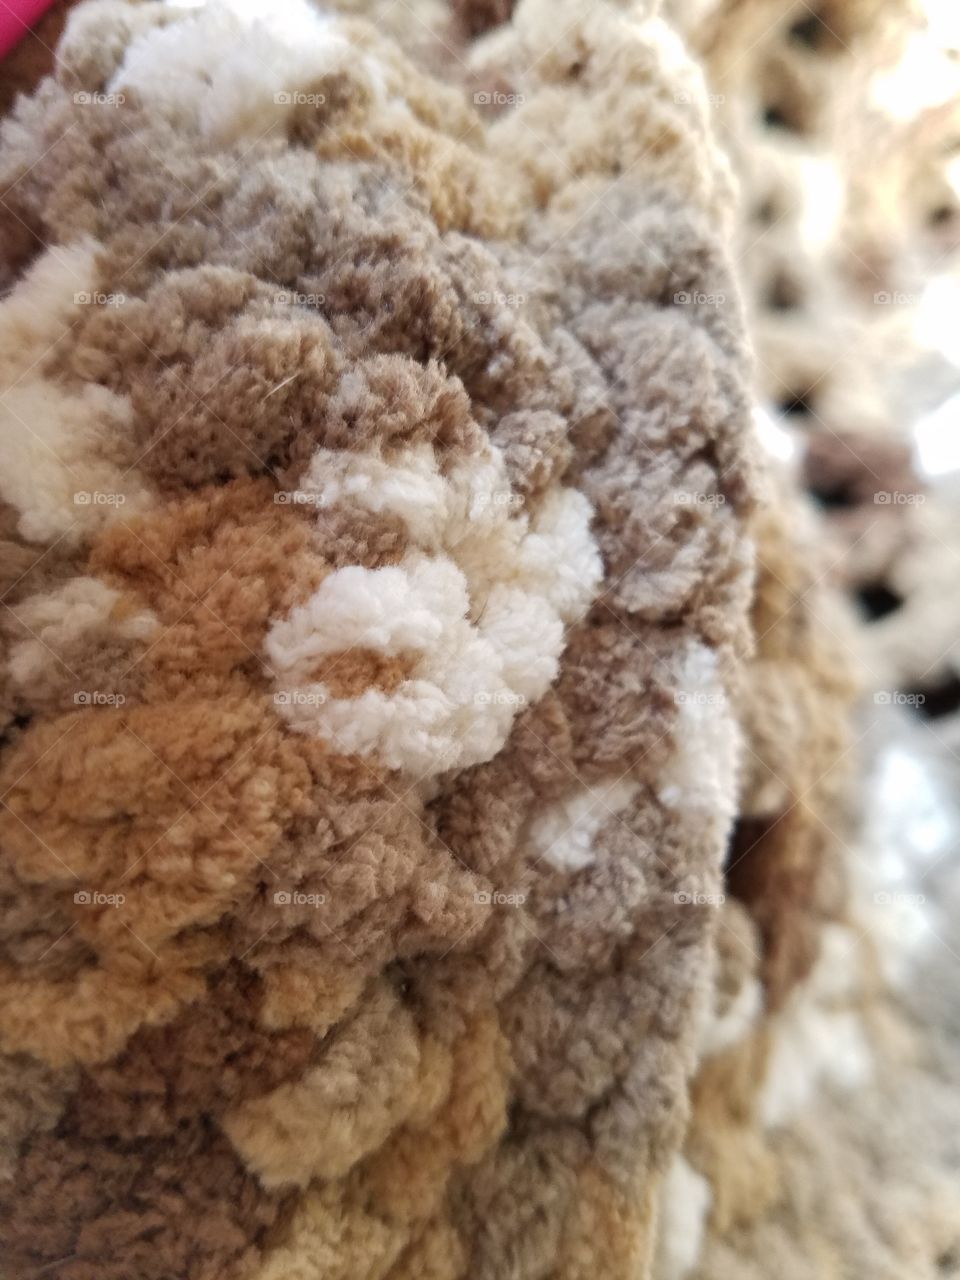 fuzzy crochet blanket